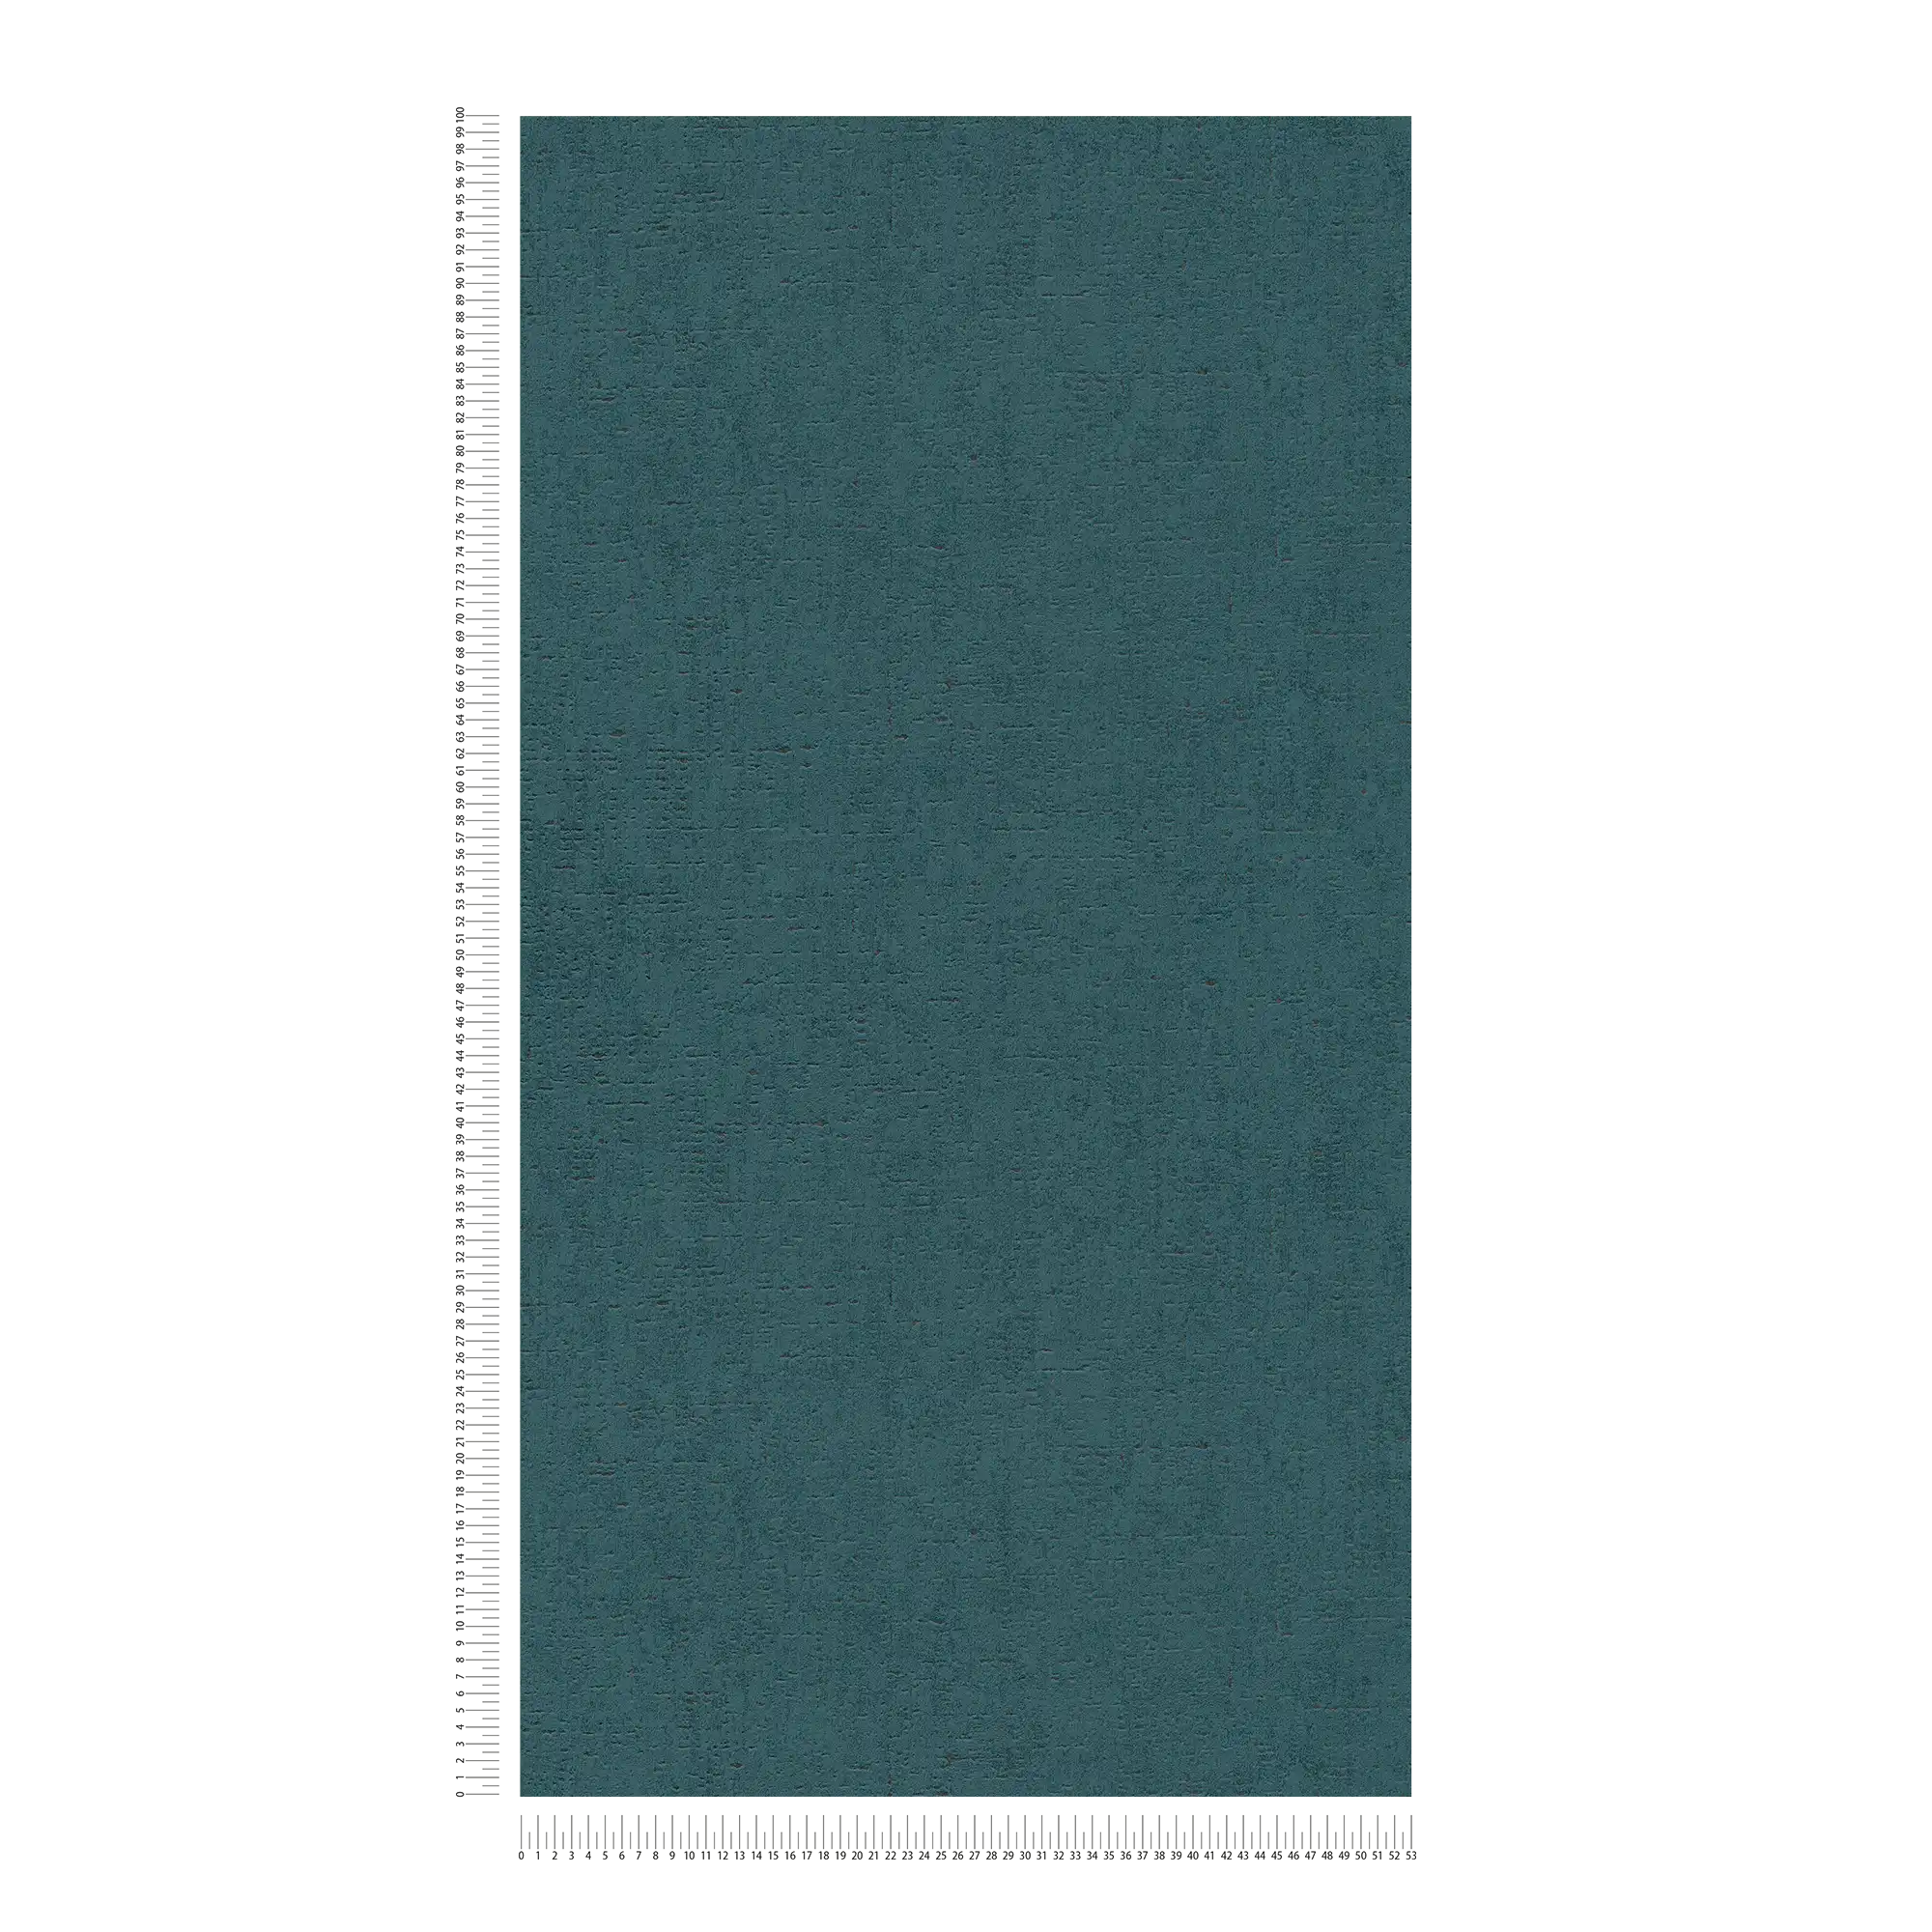             Carta da parati color petrolio con struttura a chiazze - blu, verde
        